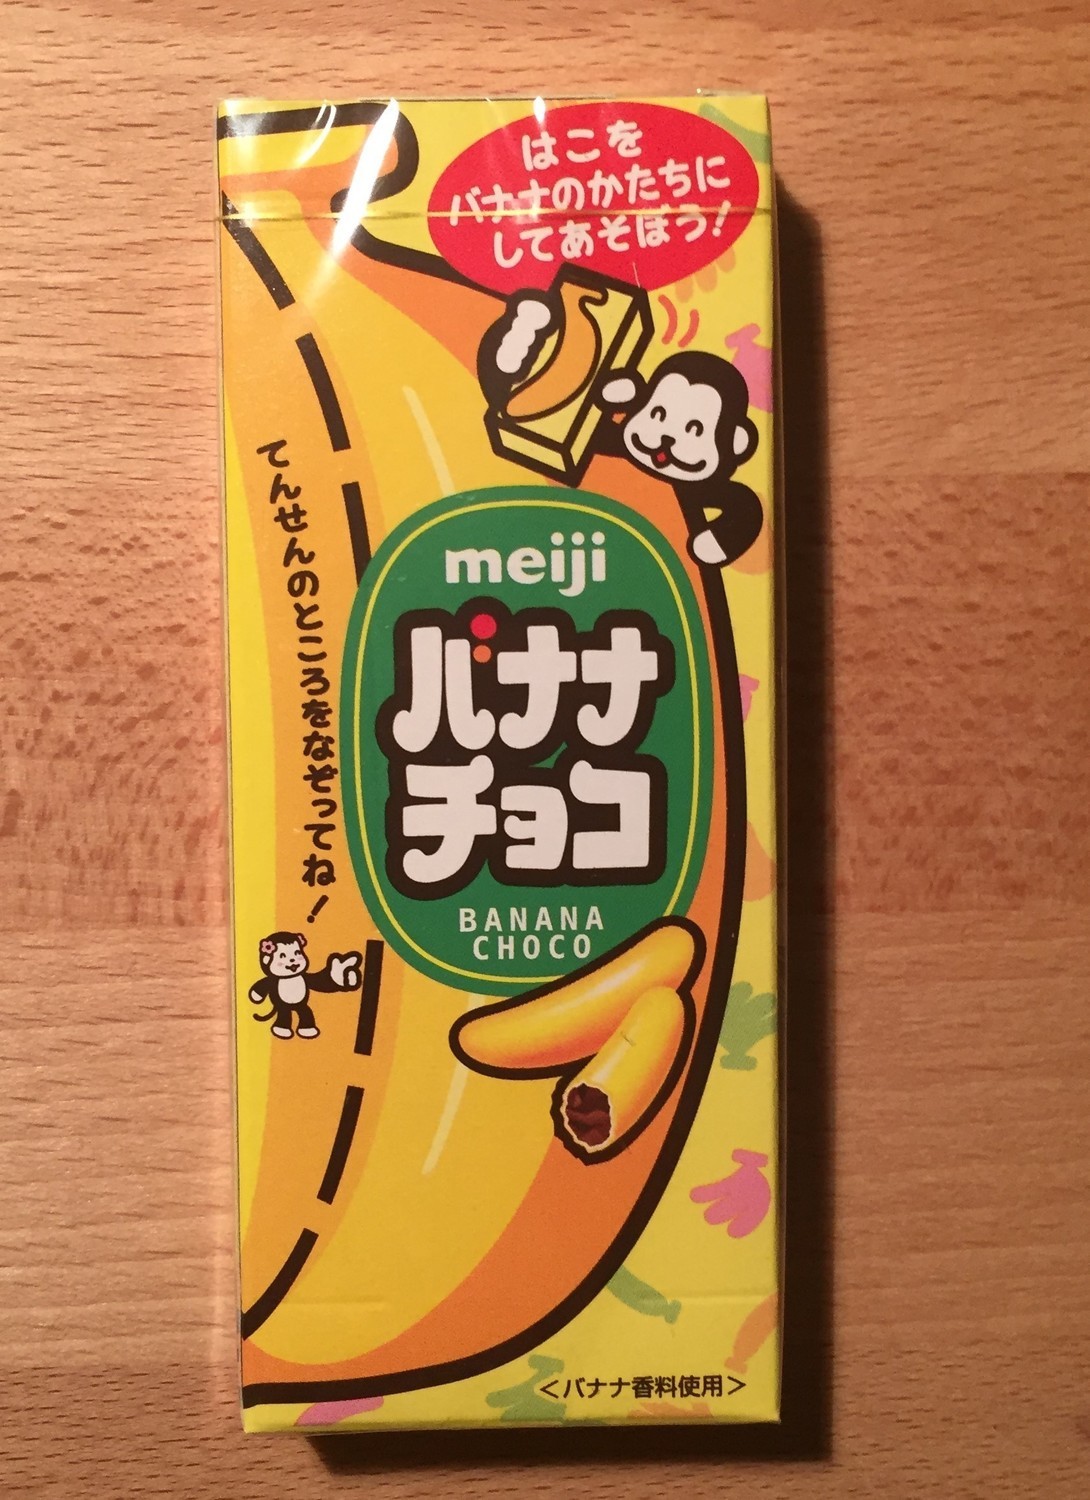 Meiji "Banana Choco" Chocolate, 37g